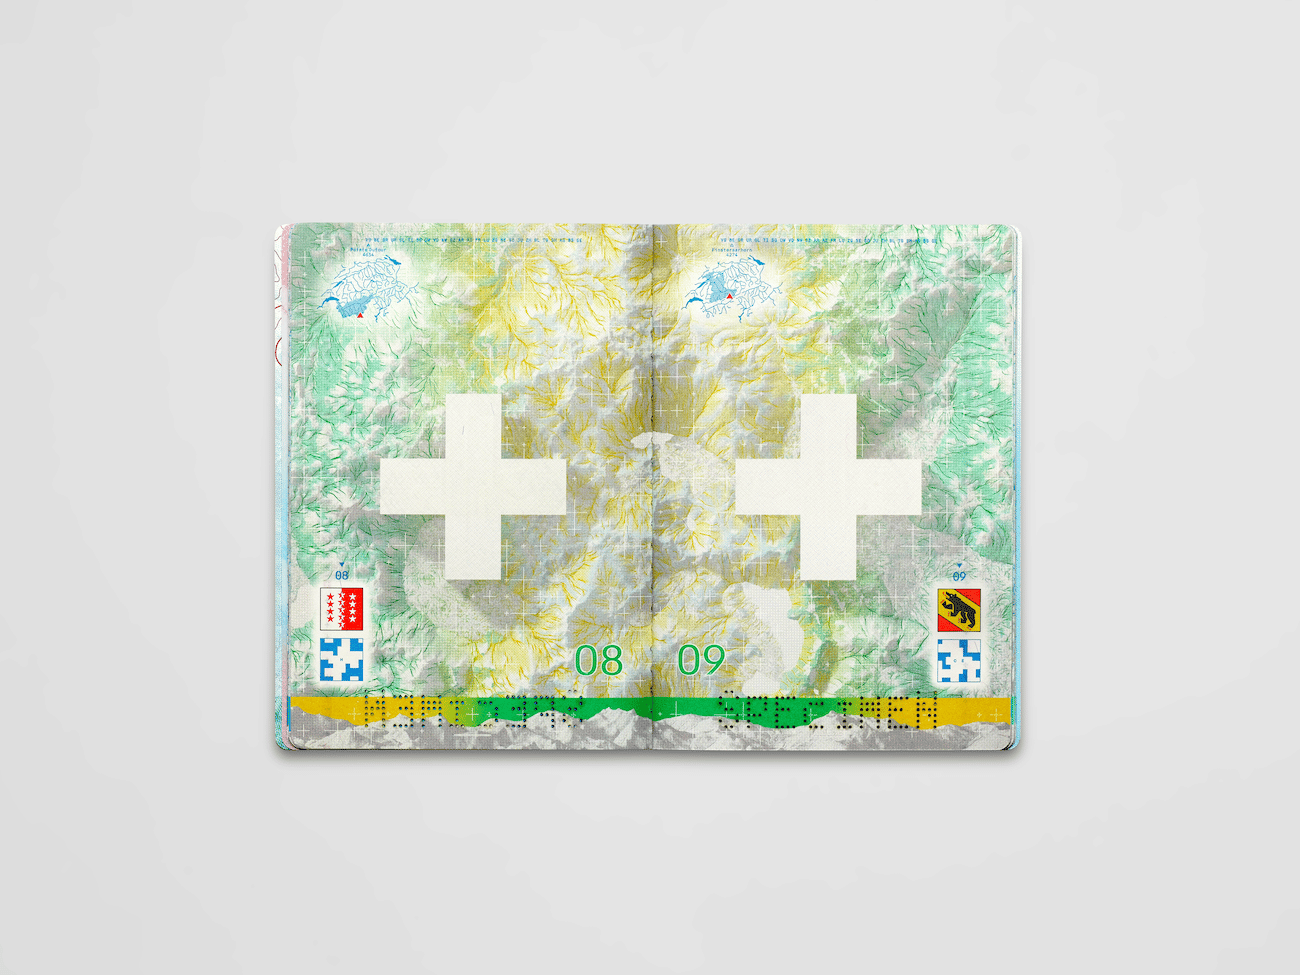 Kanton-Kartografie-Design der Visaseiten (Swiss Passport)